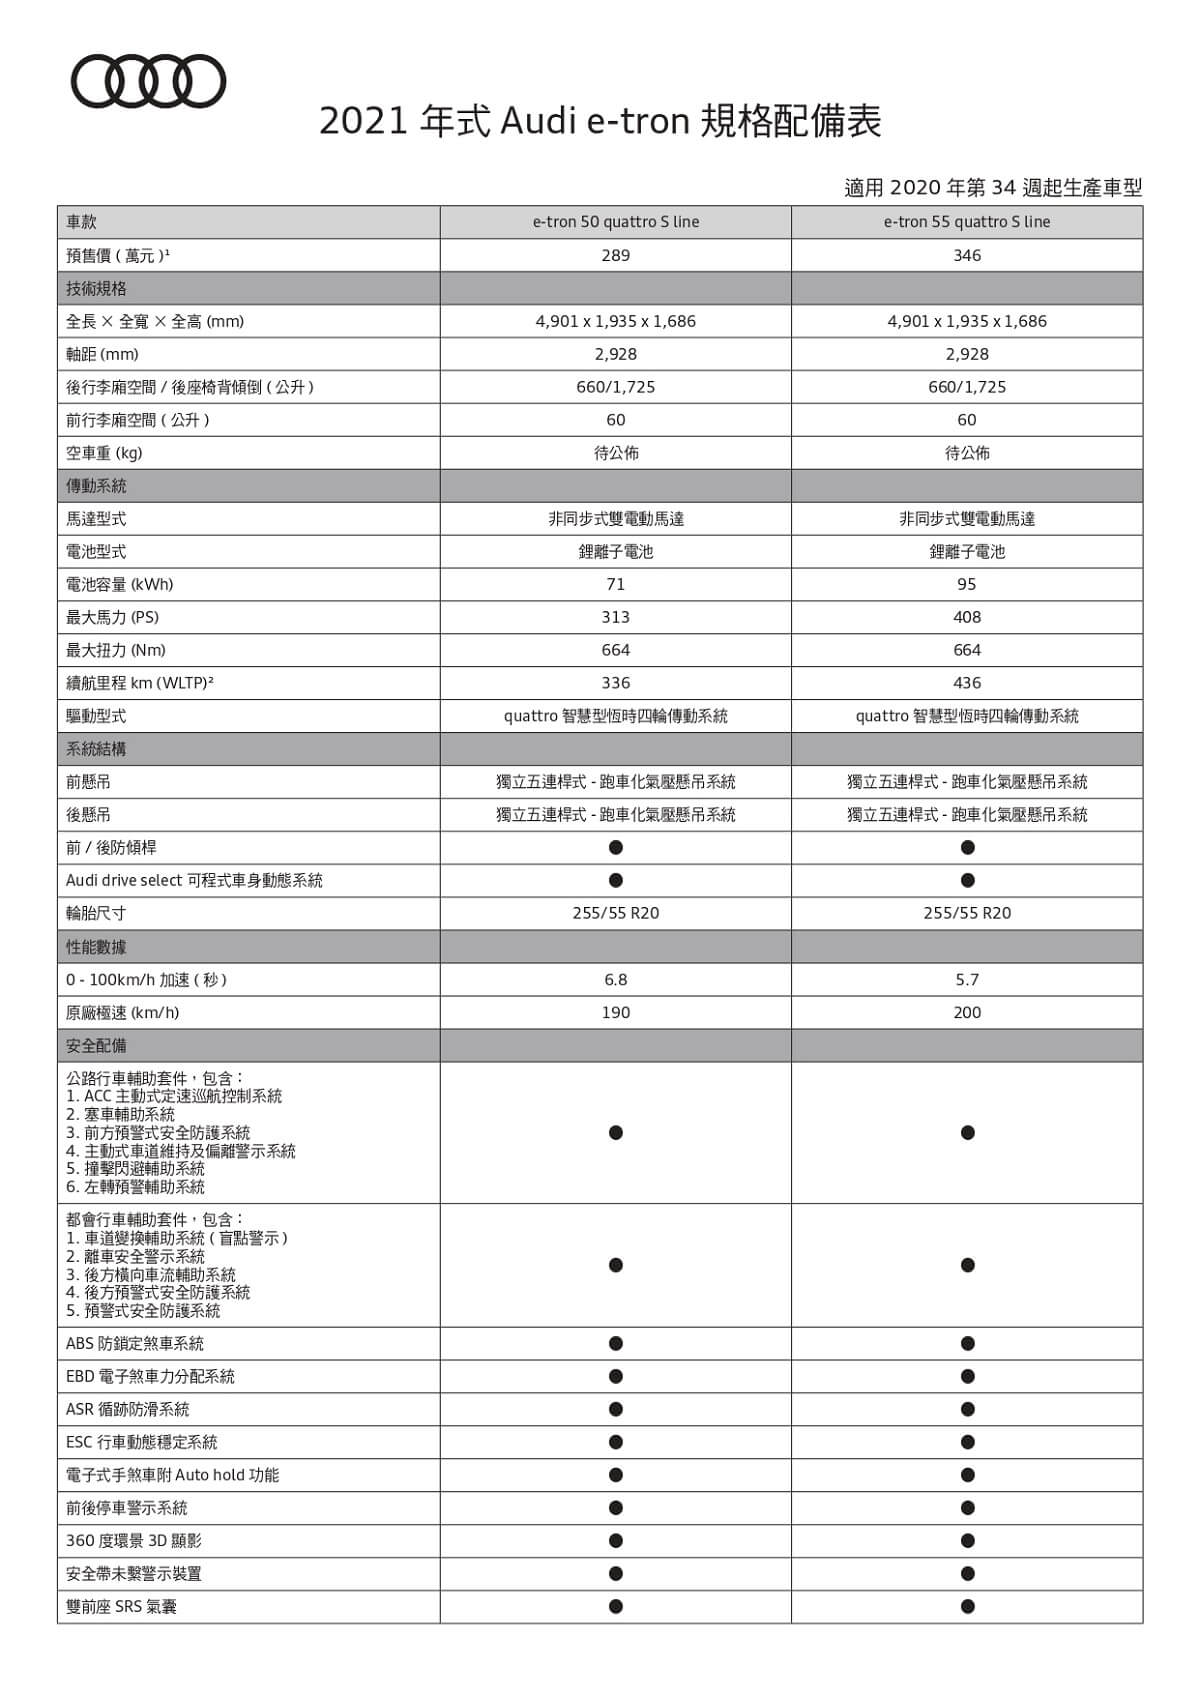 Audi MY21 e-tron 預售規格配備表_page-0001.jpg